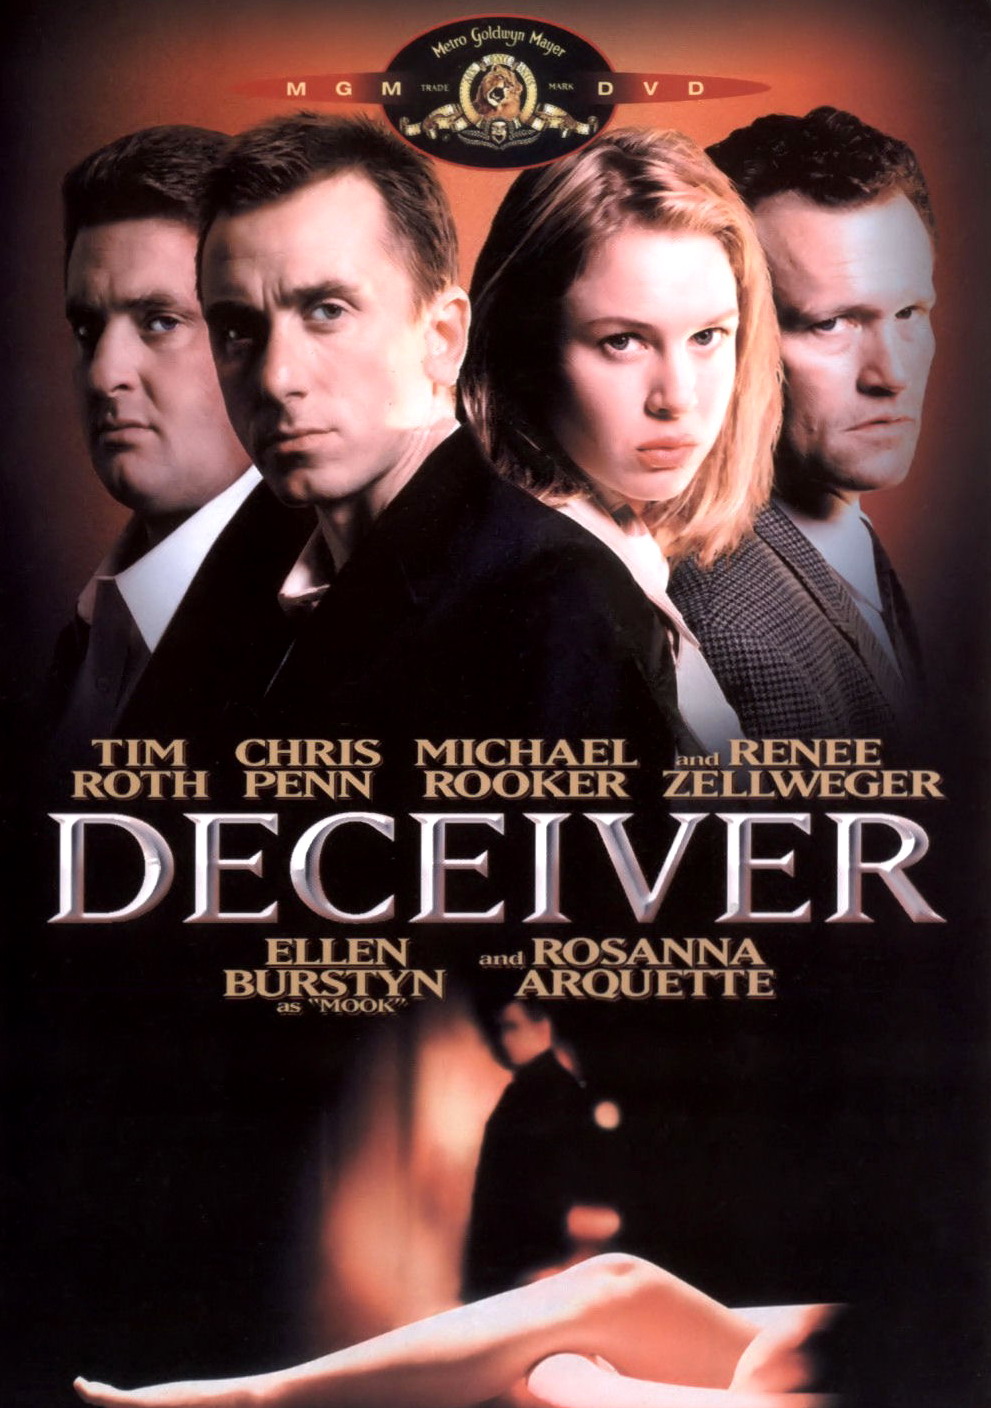 Детектор лжи / Deceiver (1997) DvDRip смотреть онлайн